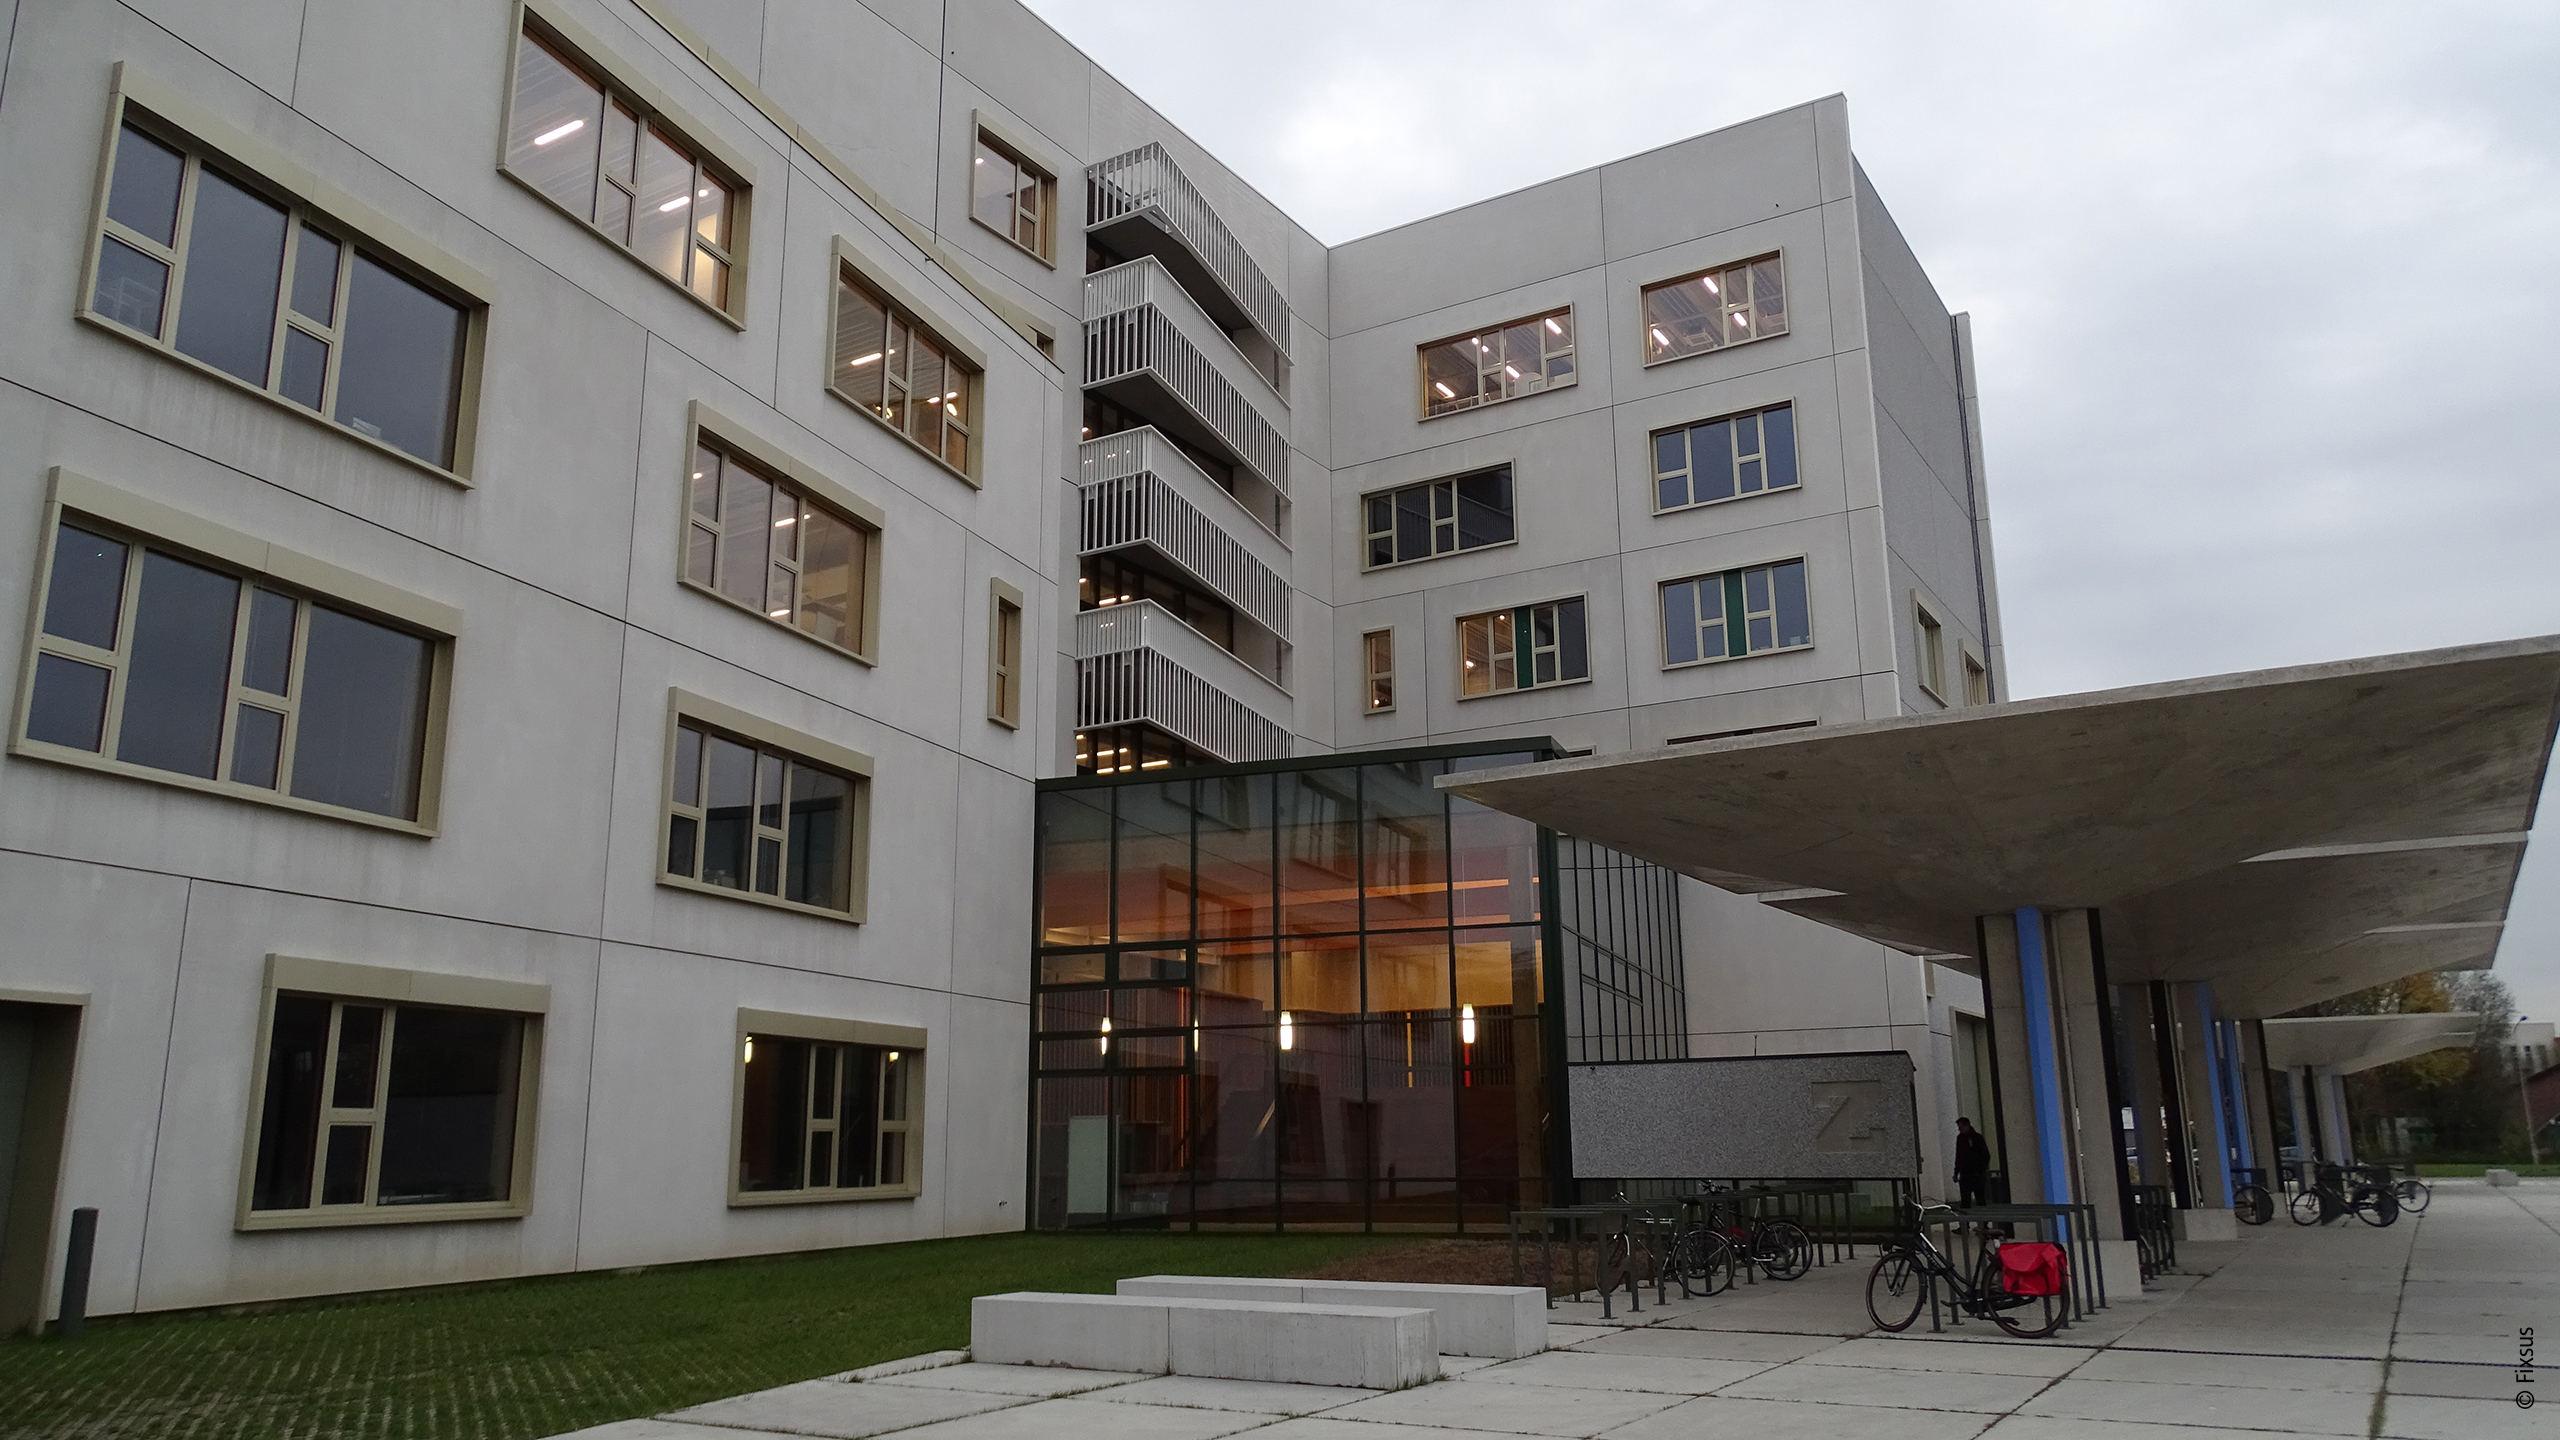 安特卫普大学应用工程科学学院这幢新建的、特别创新且节能的“Z”字形大楼通过透明可见的楼宇设备为学生提供了有价值的见解，并被学生用作现实生活实验室。   